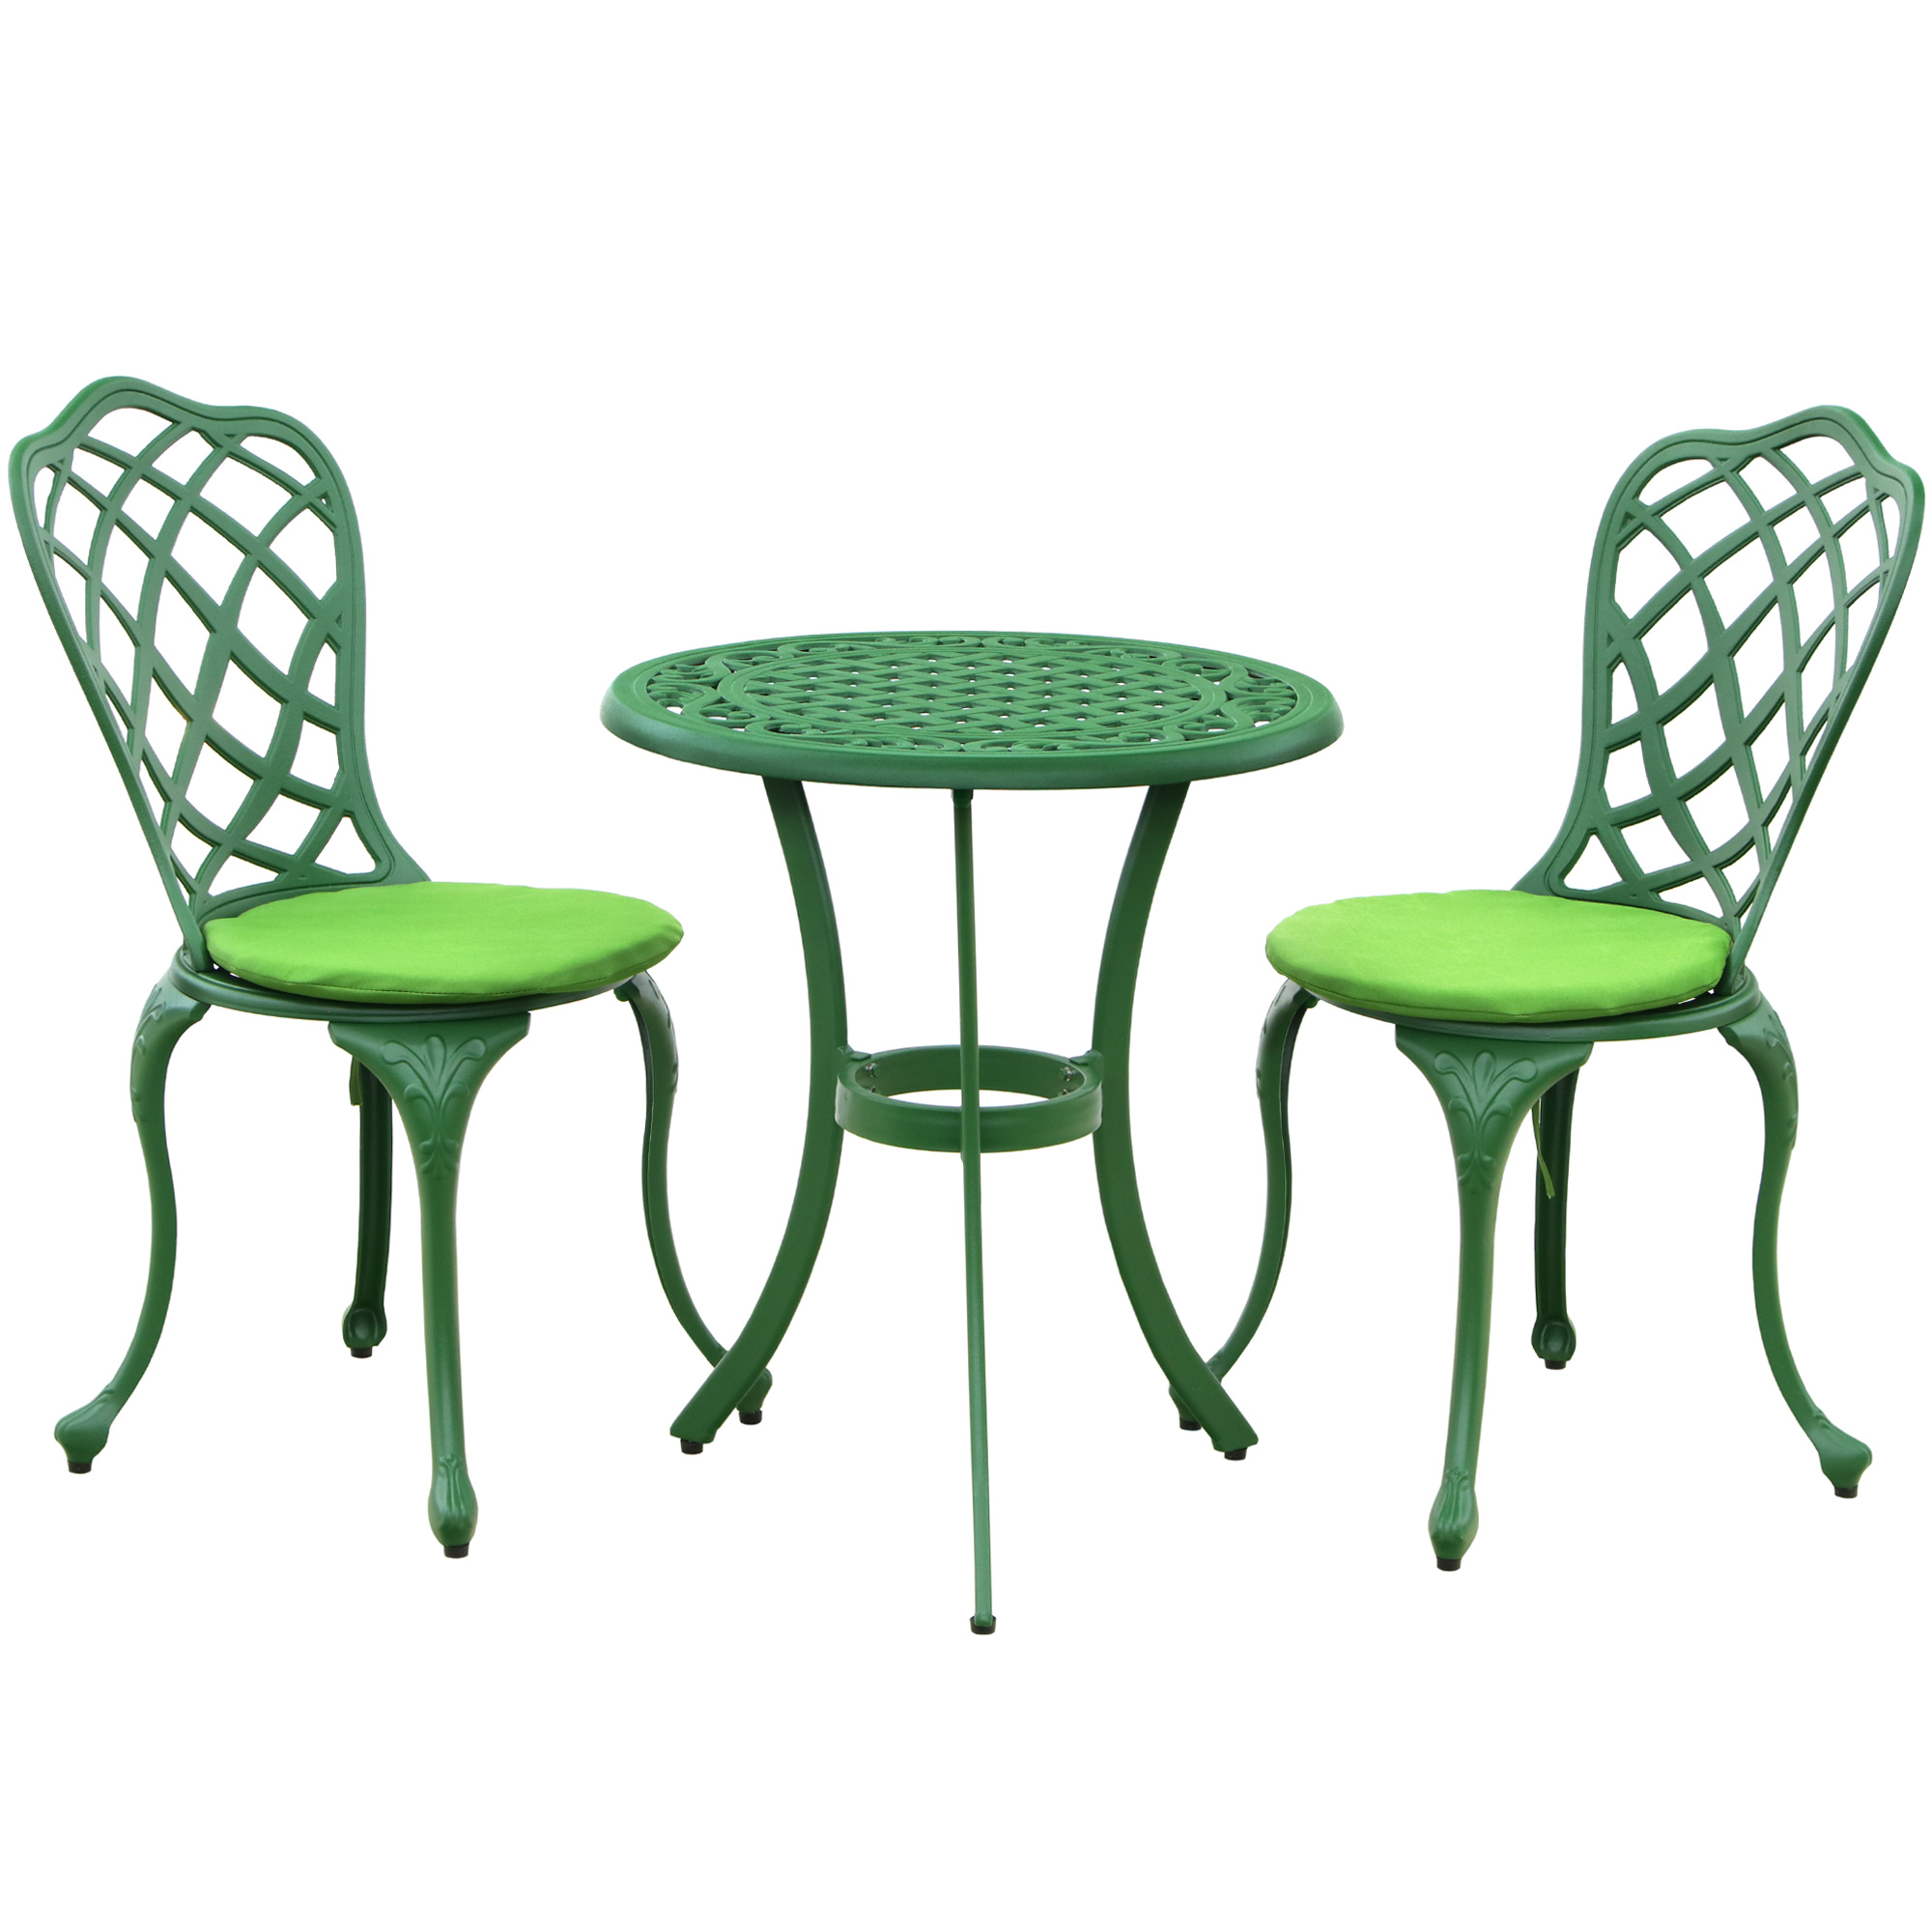 Комплект мебели Linyi 3 предмета зеленый/салатовый комплект мебели bizzotto kledi 3 предмета